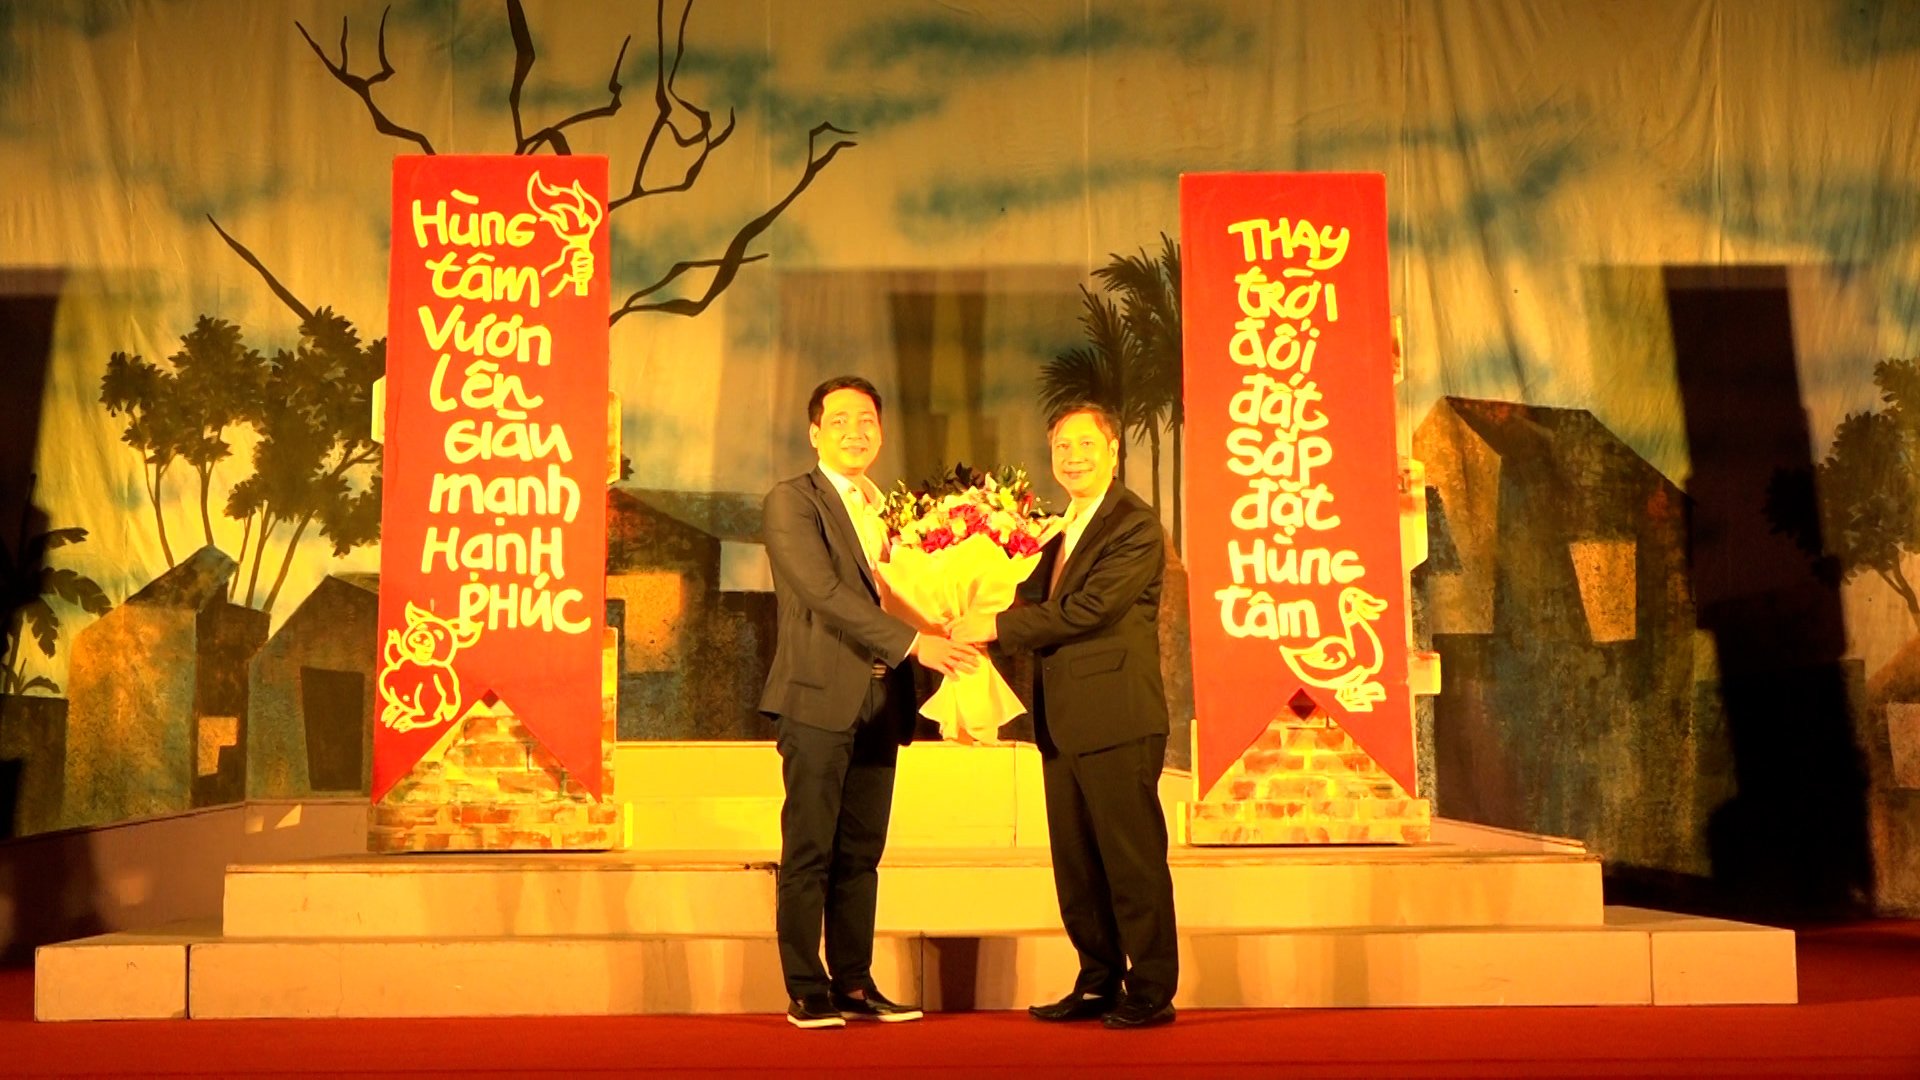 UBND thành phố phối hợp với Sở văn hóa và thể thao, Nhà hát kịch Việt Nam, tổ chức buổi biểu diễn vở kịch mang tên “Bệnh sĩ ” của tác giả Lưu Quang Vũ